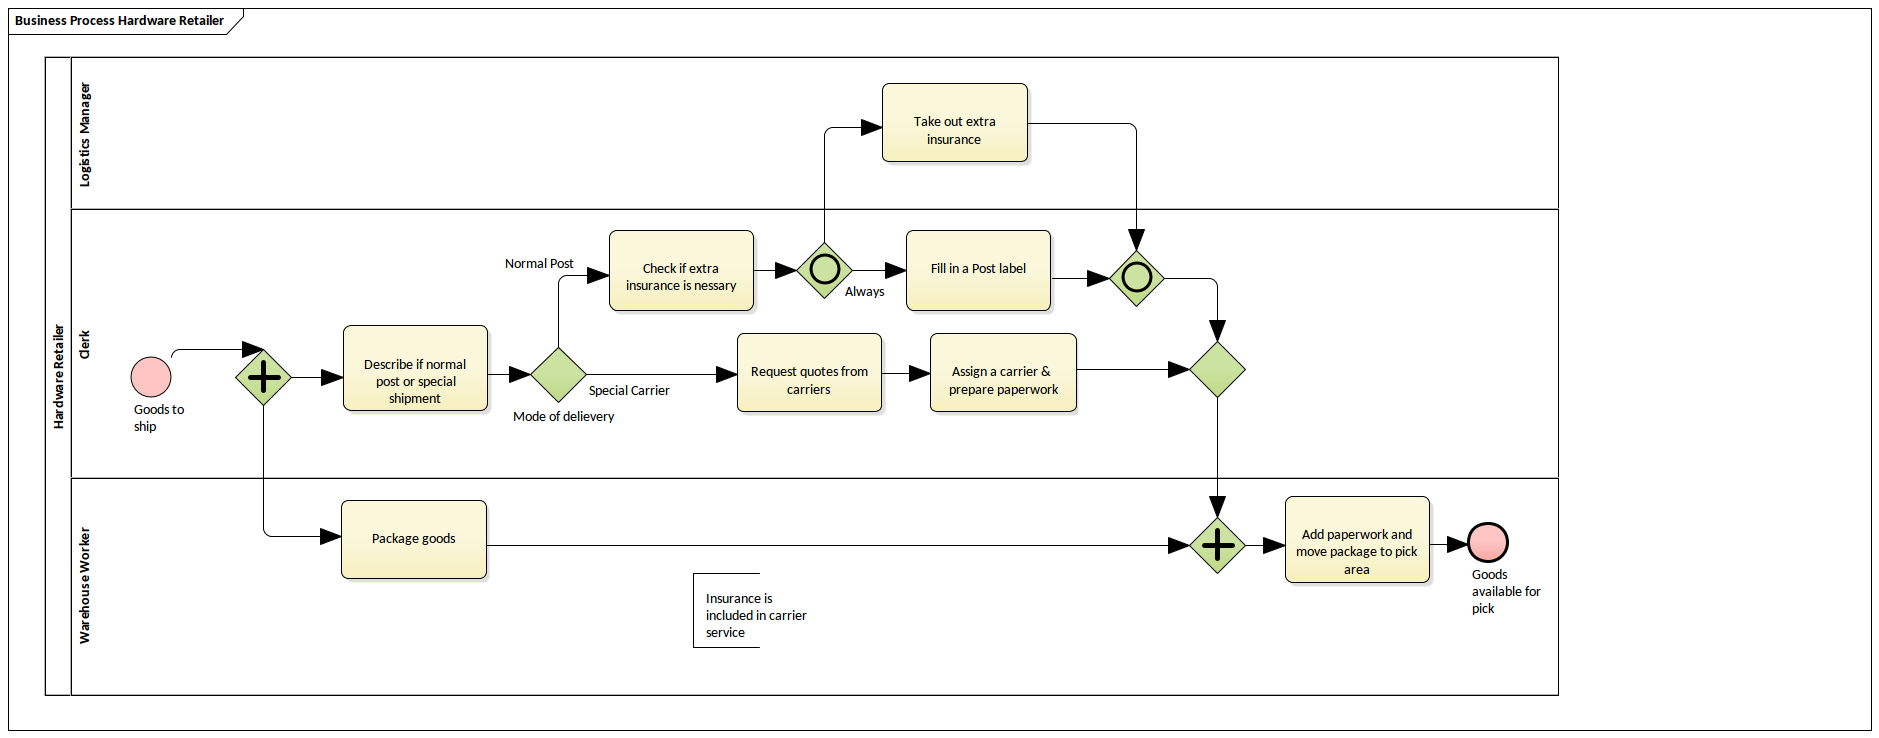 BPMN Business Process Diagram - Hardware Retailer